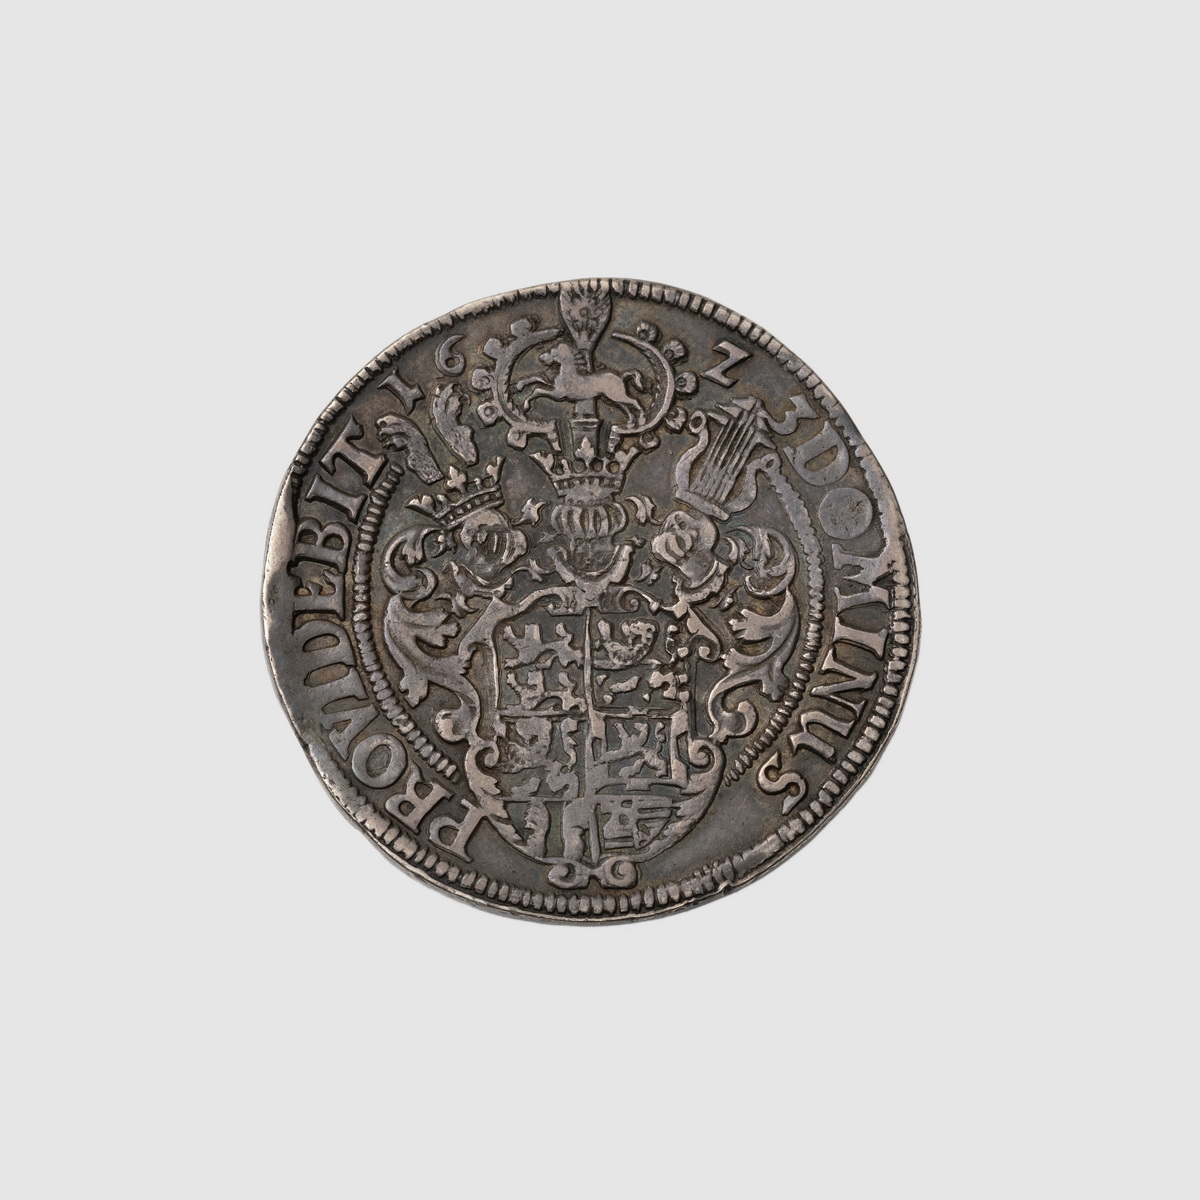 Münze geprägt mit Wappen